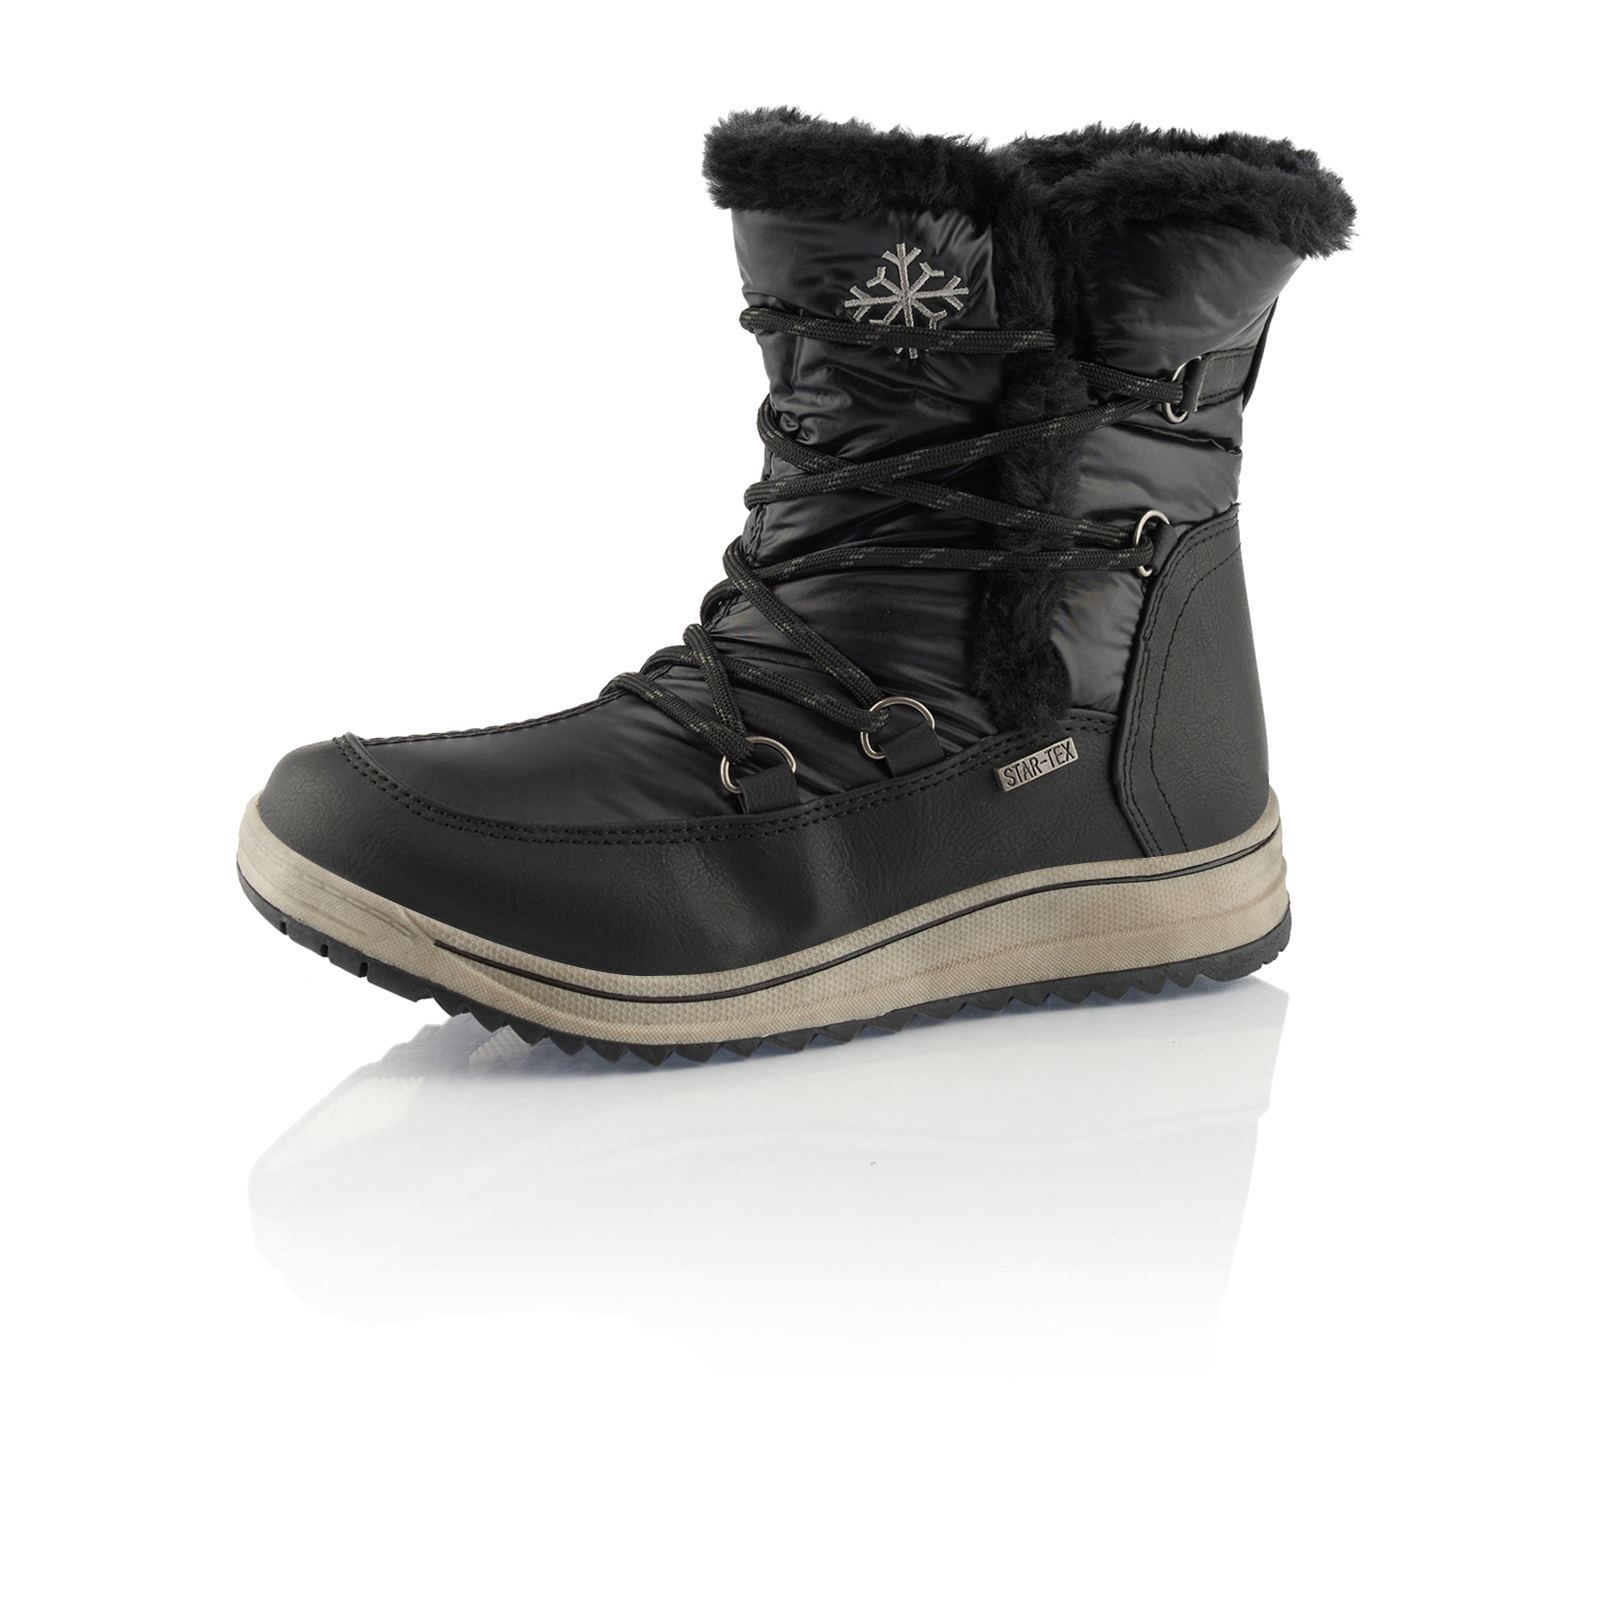 Stiefel Winterstiefel Damenschuhe Boots Schuhe Warm Gefüttert Leder-Optik Neu 